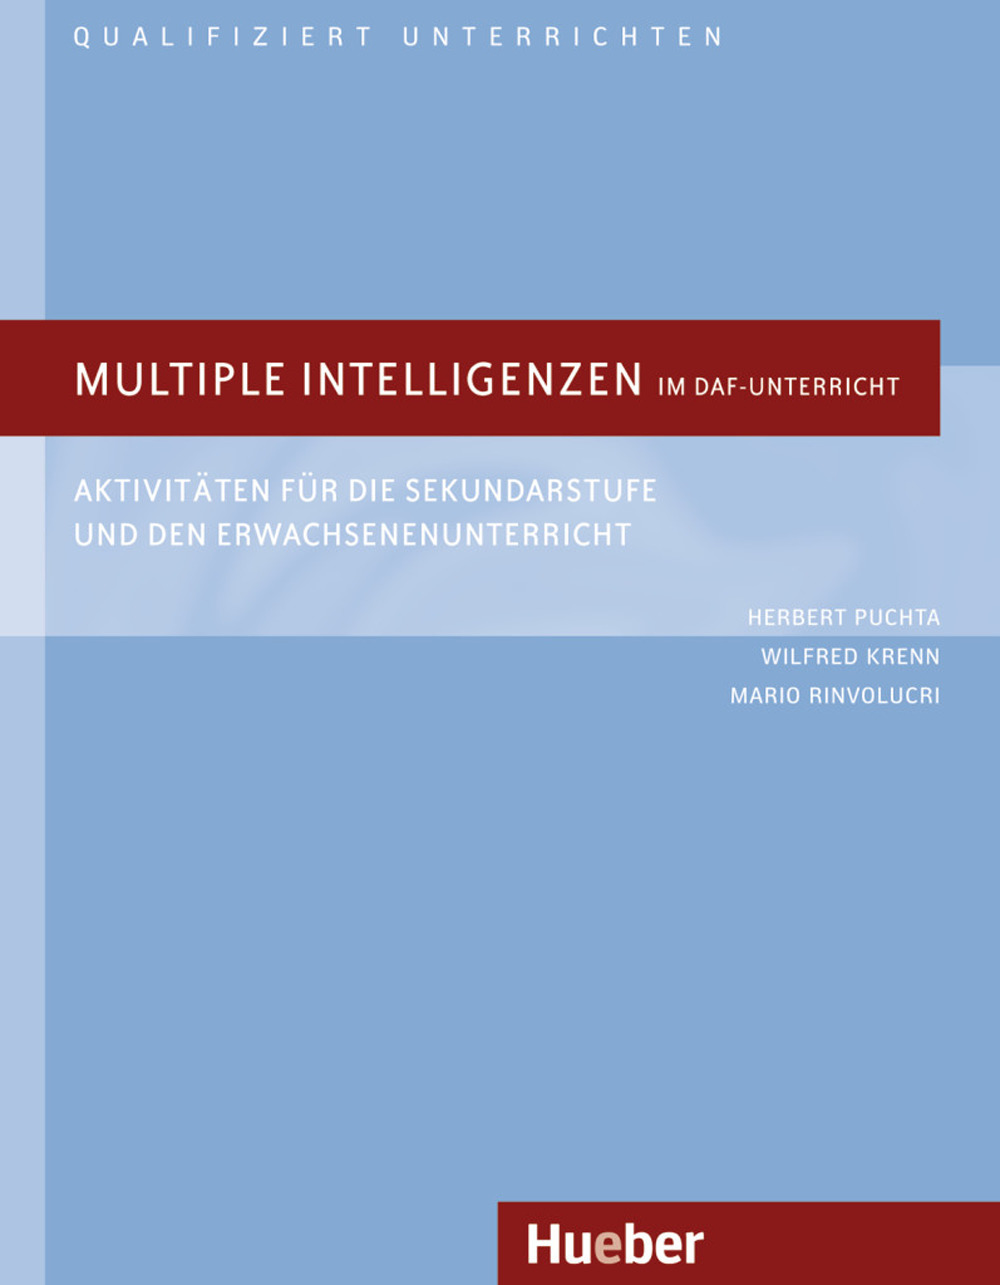 Multiple Intelligenzen im DaF-Unterricht. Aktivitäten für die Sekundarstufe und den Erwachsenenuntericht